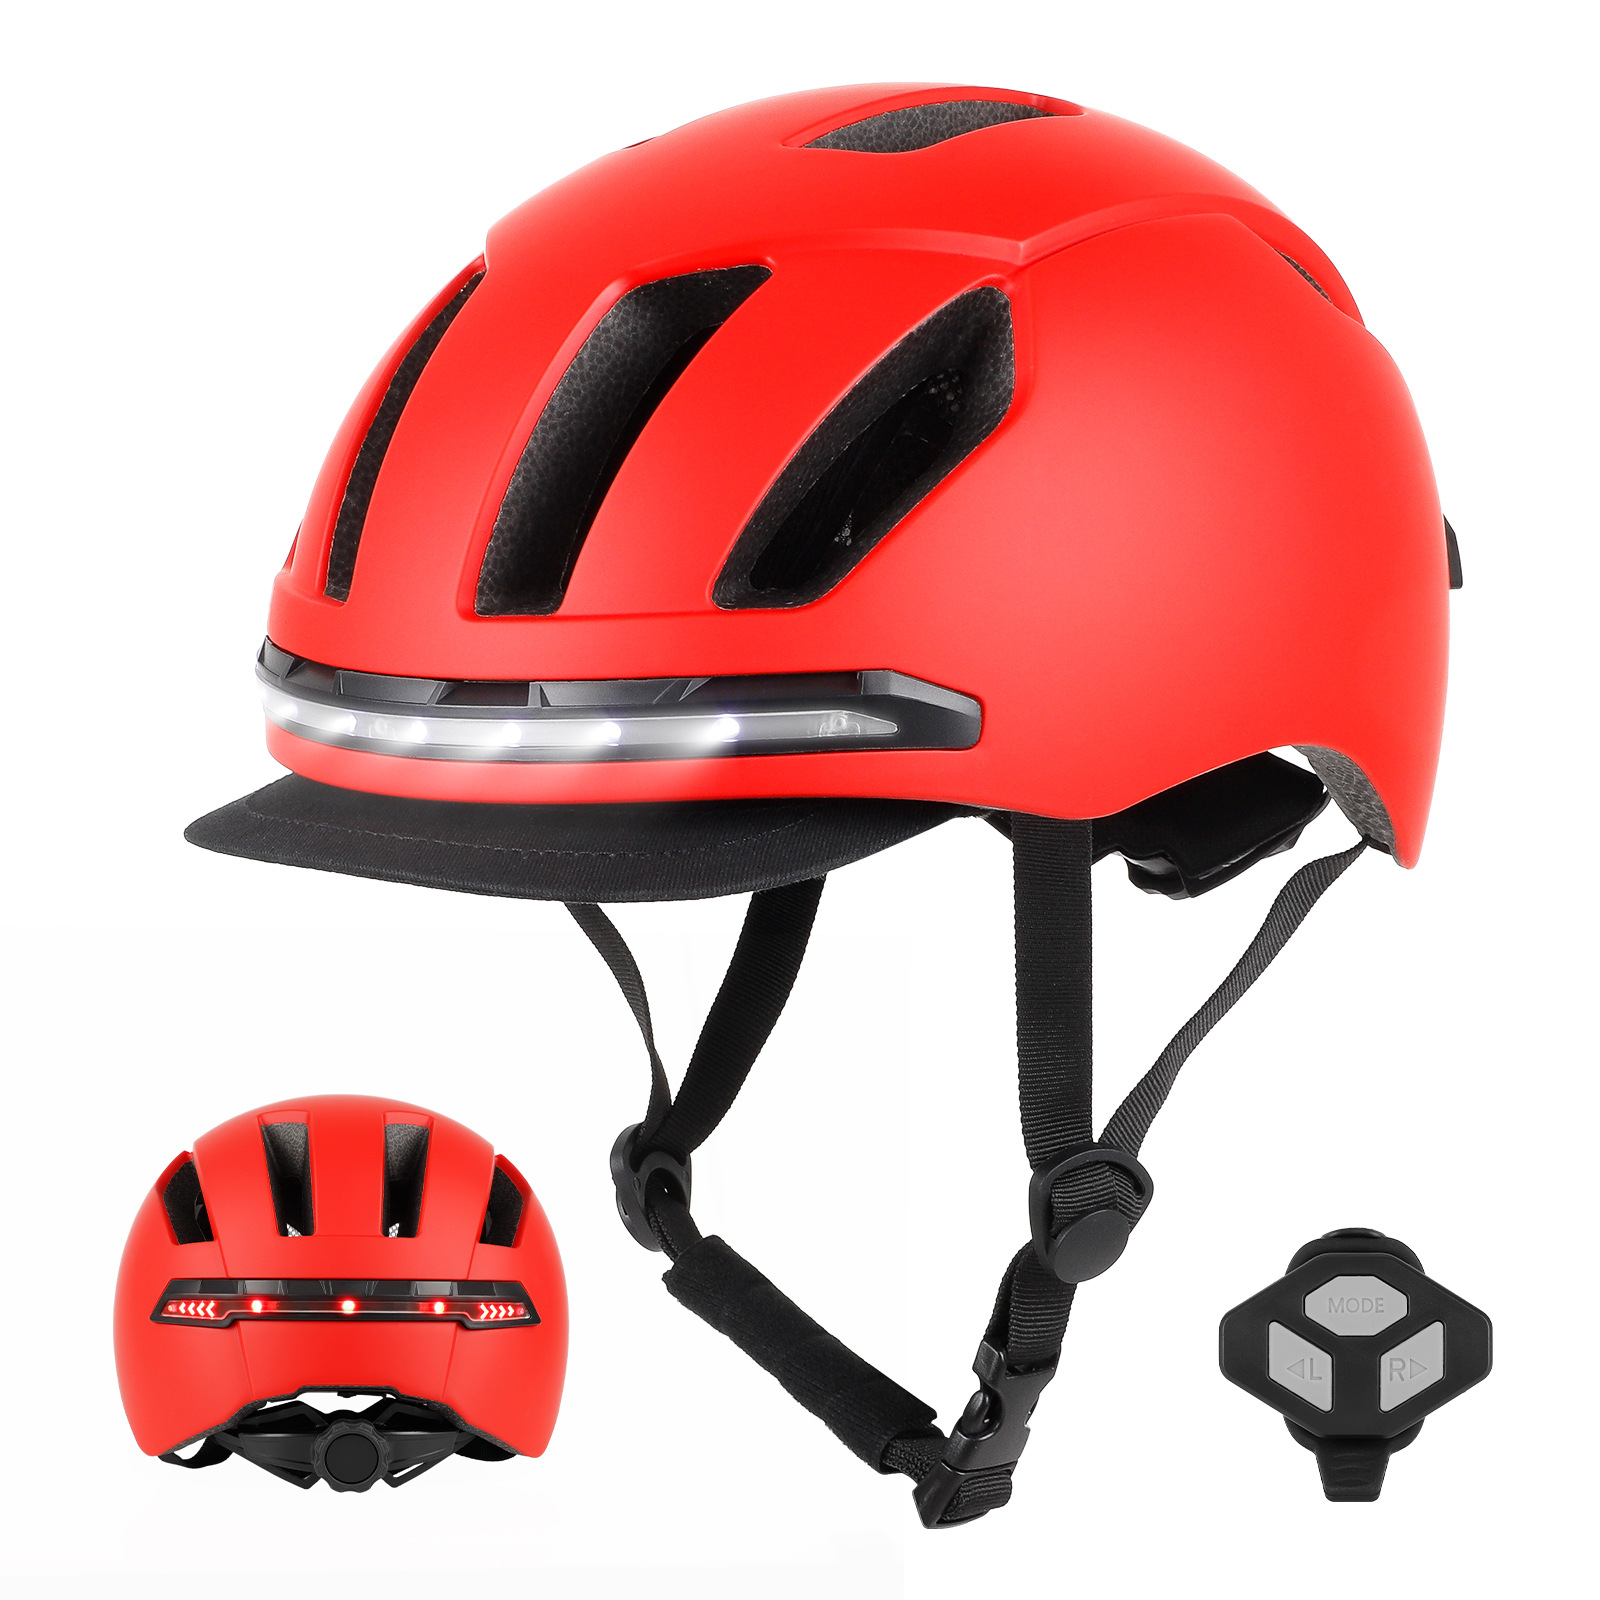 新款U001遥控转向智能头盔山地自行车滑板街车攀岩登山漂流救援款